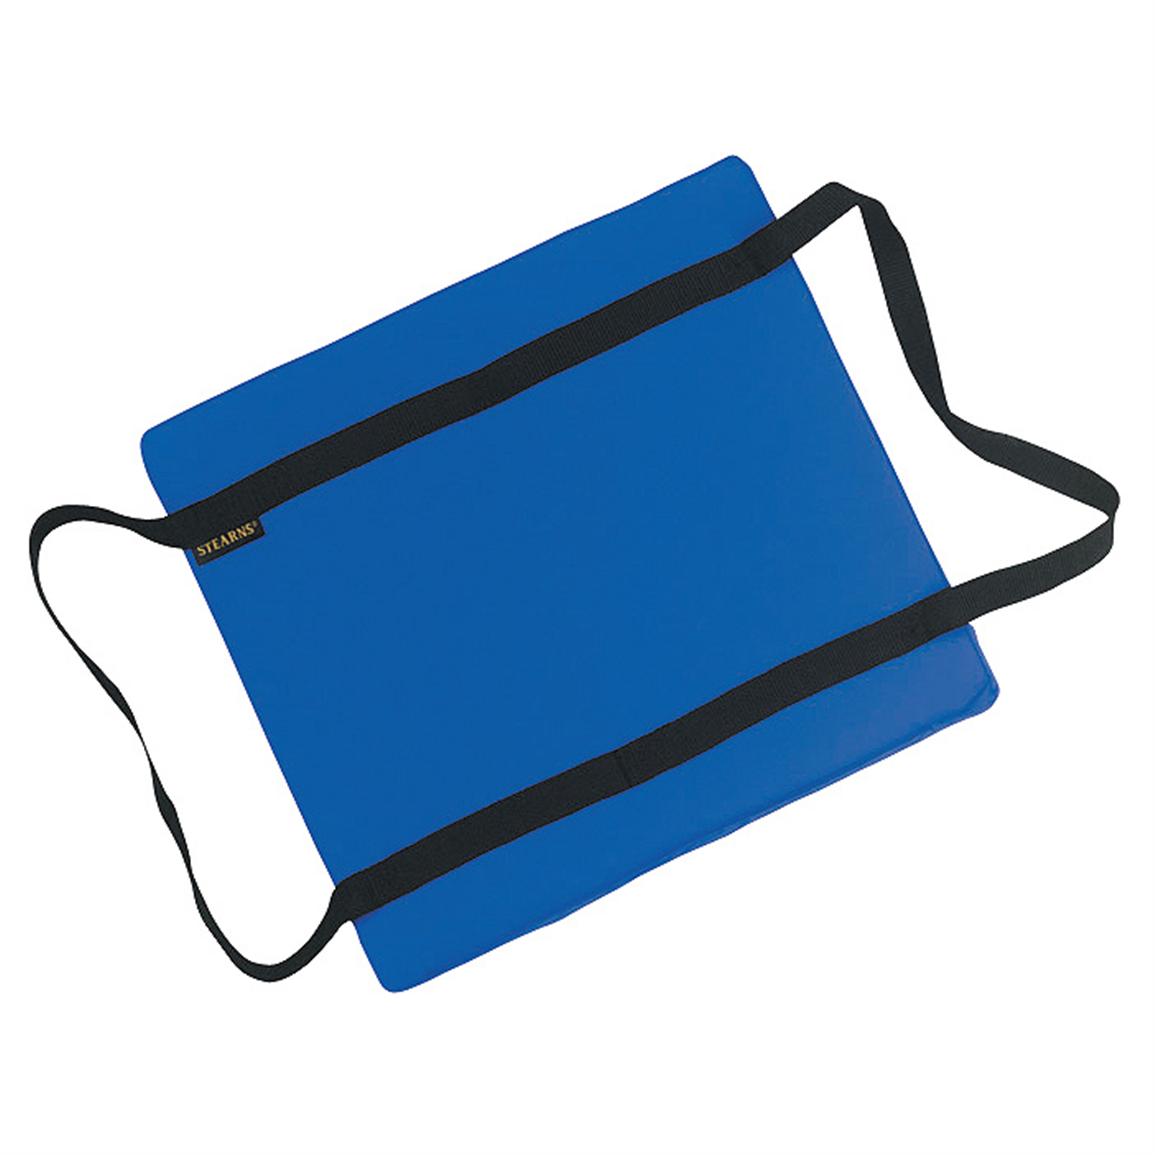 Stearns® Utility and Flotation Cushion, Blue